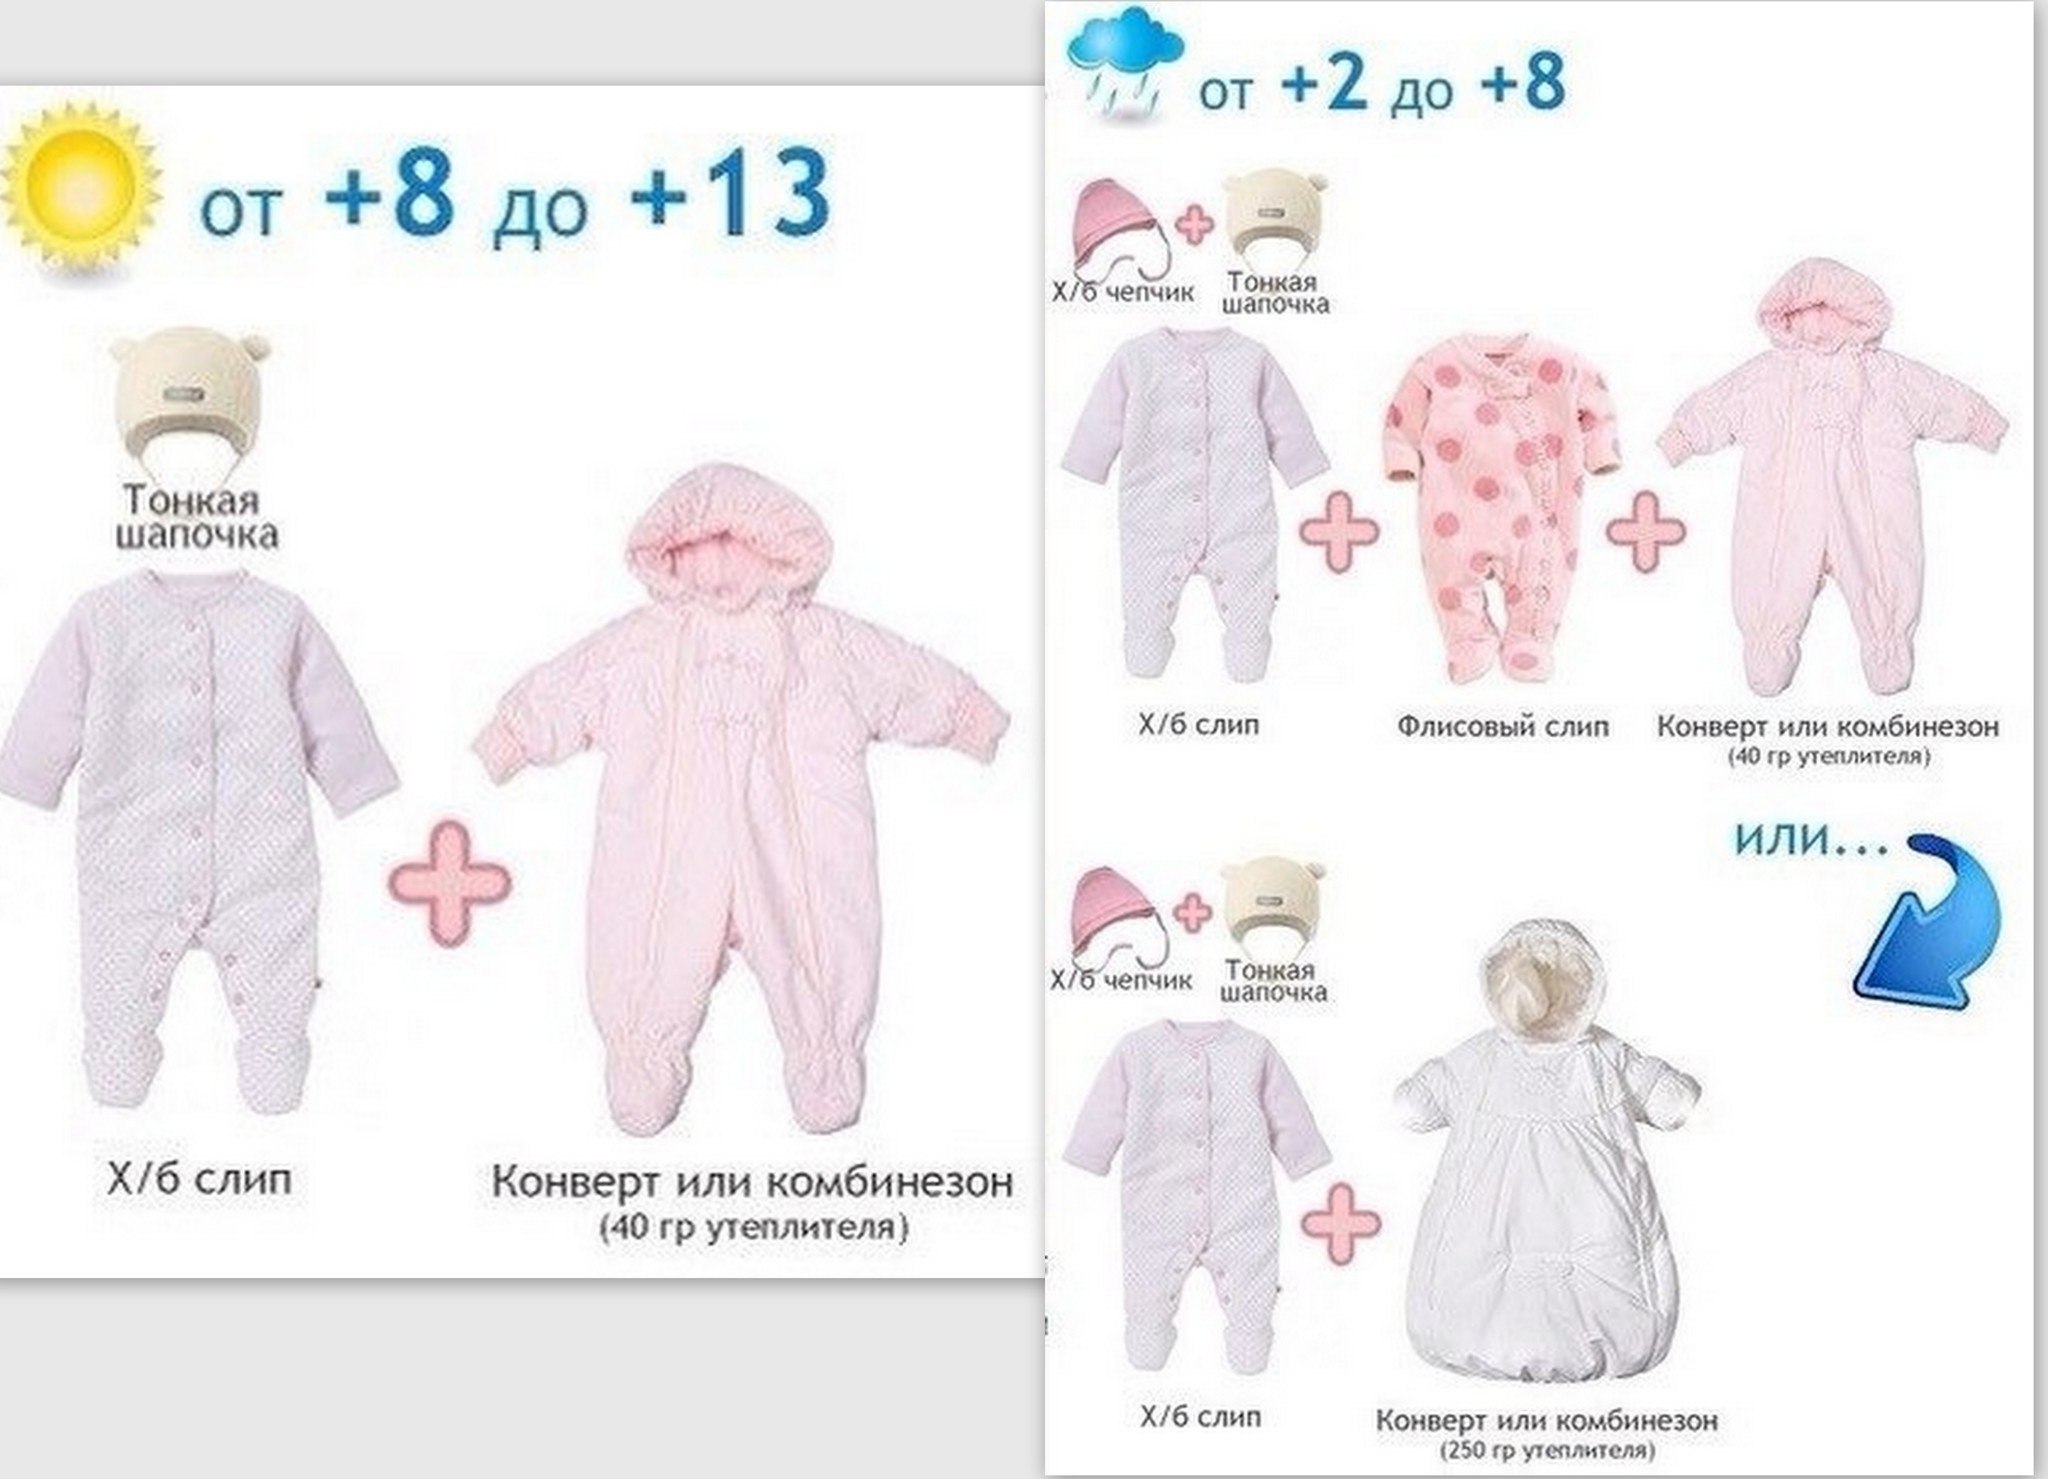 Как одевать ребенка 7 месяцев весной. Как одеть грудничка в +10 +15. 8 Градусов как одеть грудничка. Как одеть ребенка. Одежда для новорожденных по градусам.